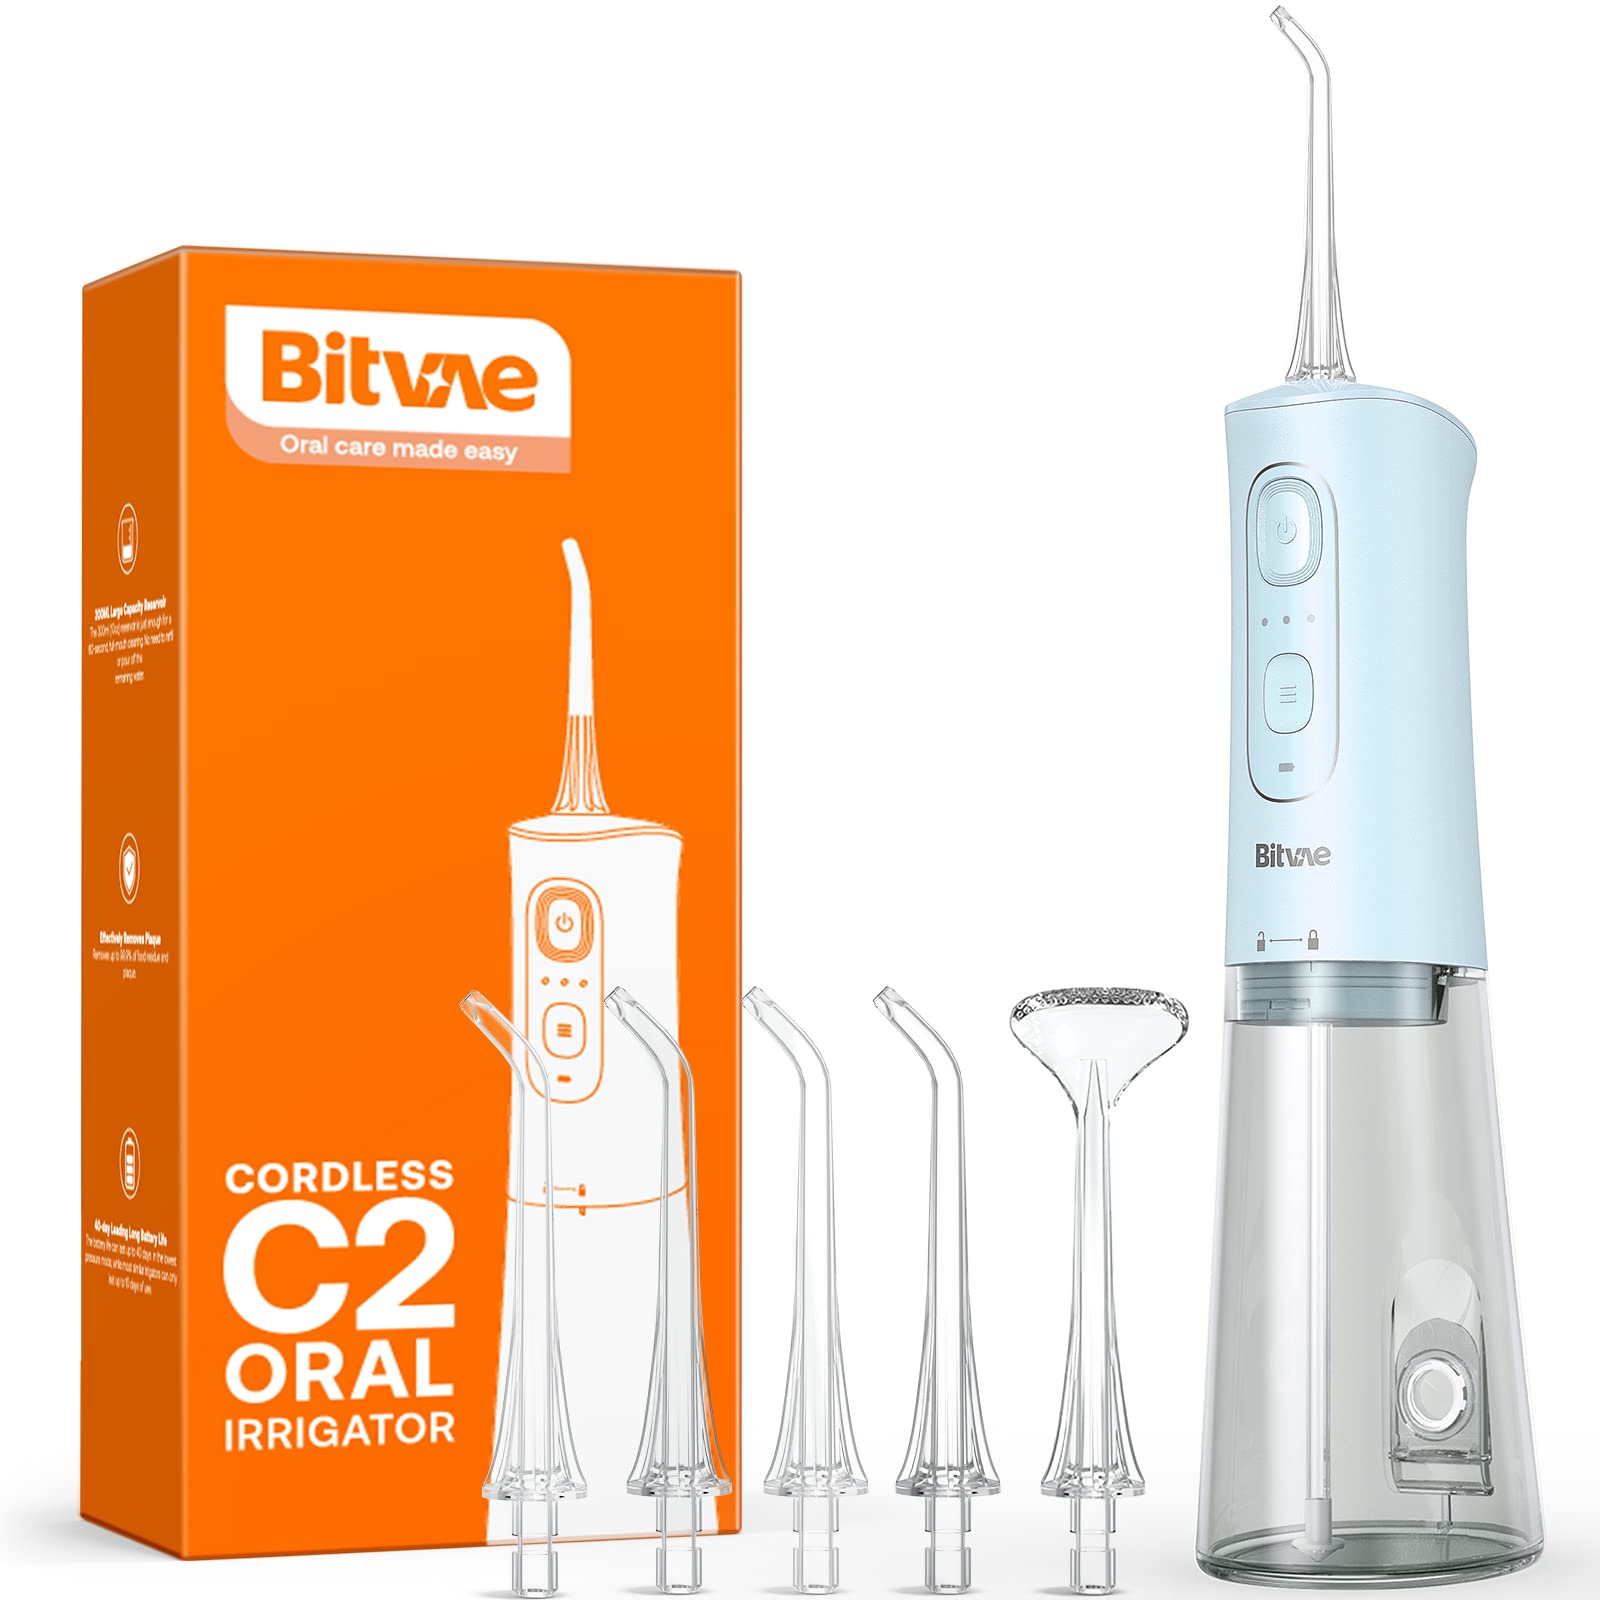 Bitvae Water Dental flosser for Teeth